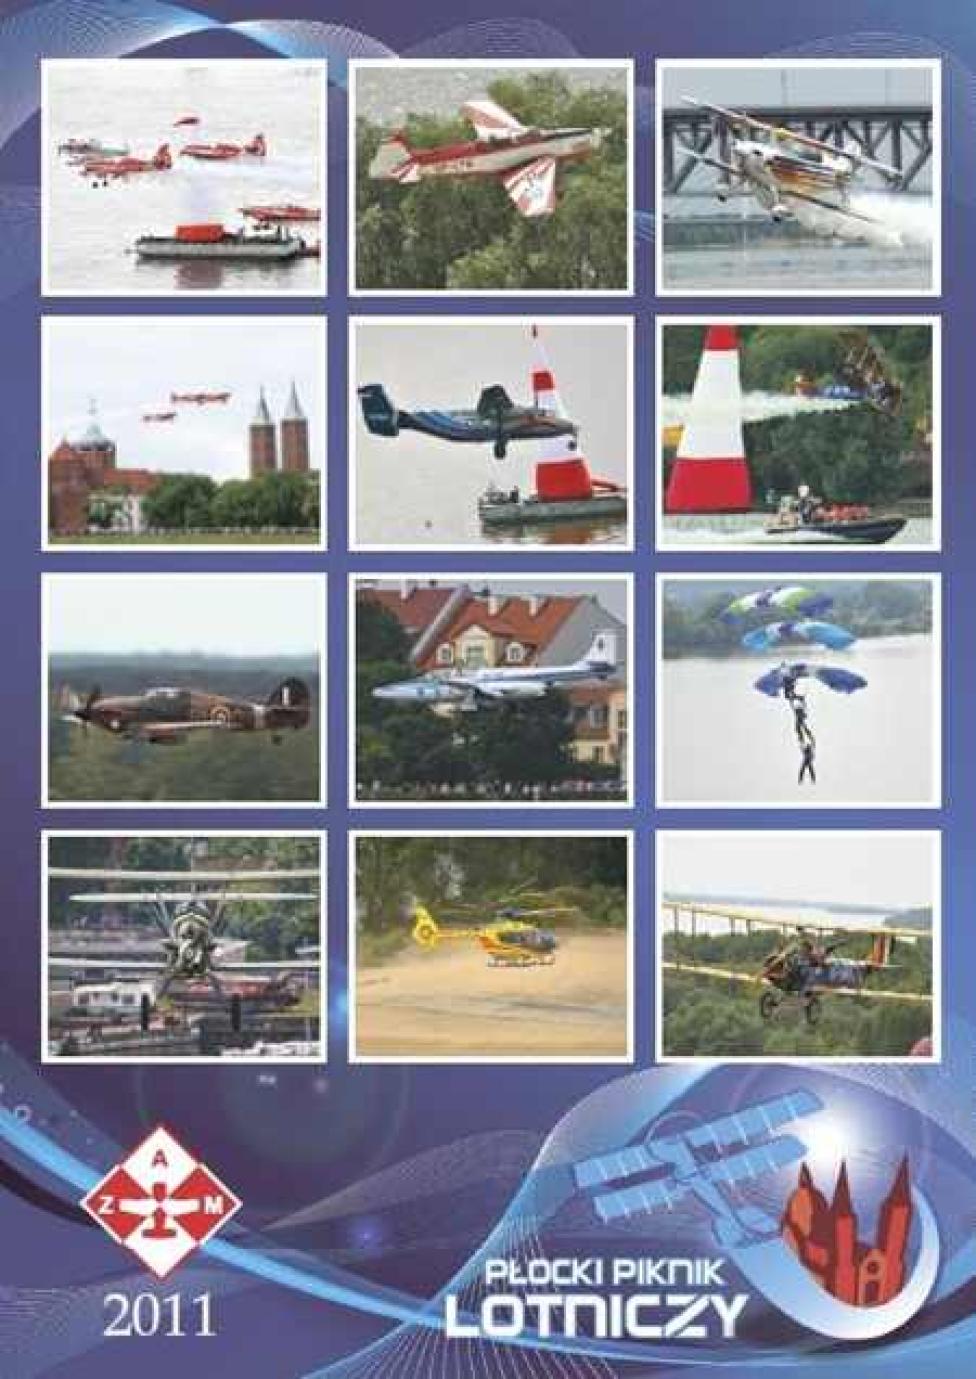 Pierwsza strona Kalendarza Płockiego Pikniku Lotniczego